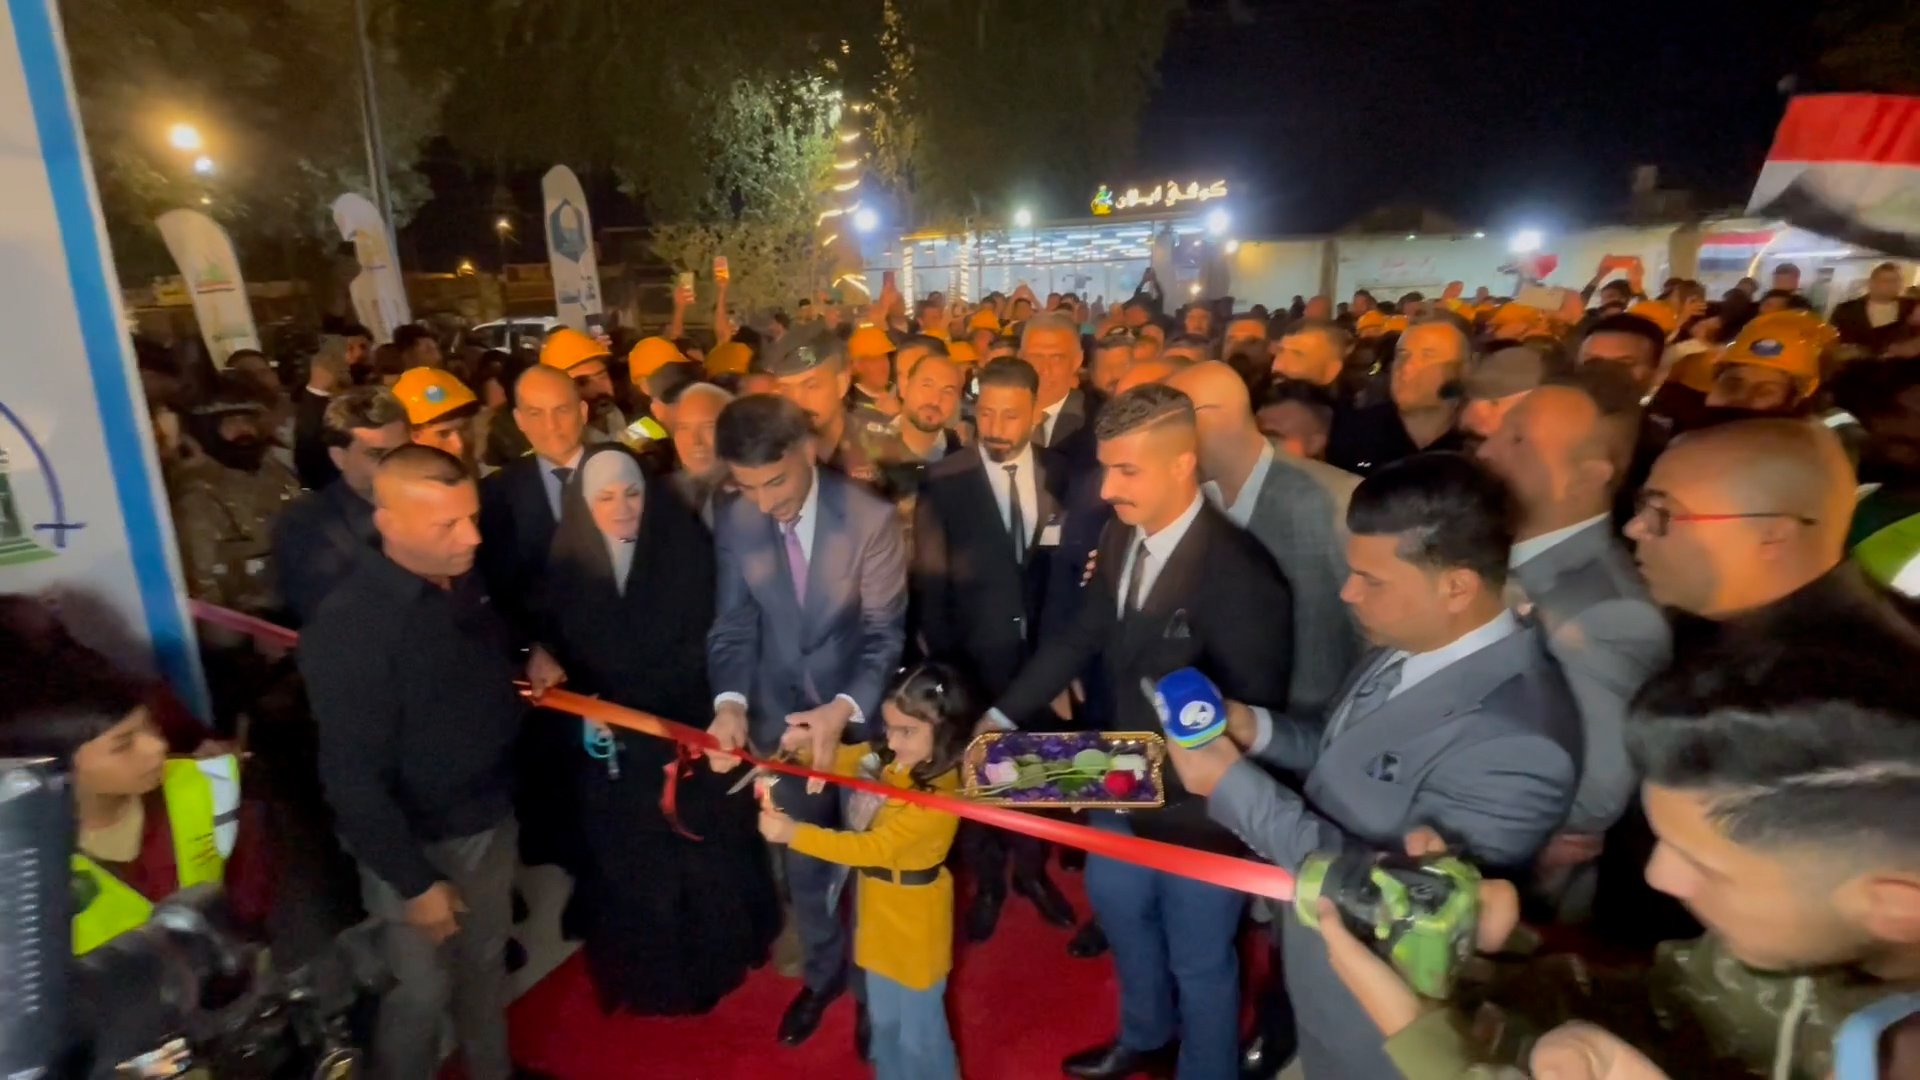 فيديو من افتتاح كورنيش الكوفة قبل قليل.. ومدير الشركة: إنه يشبه دبي واسطنبول